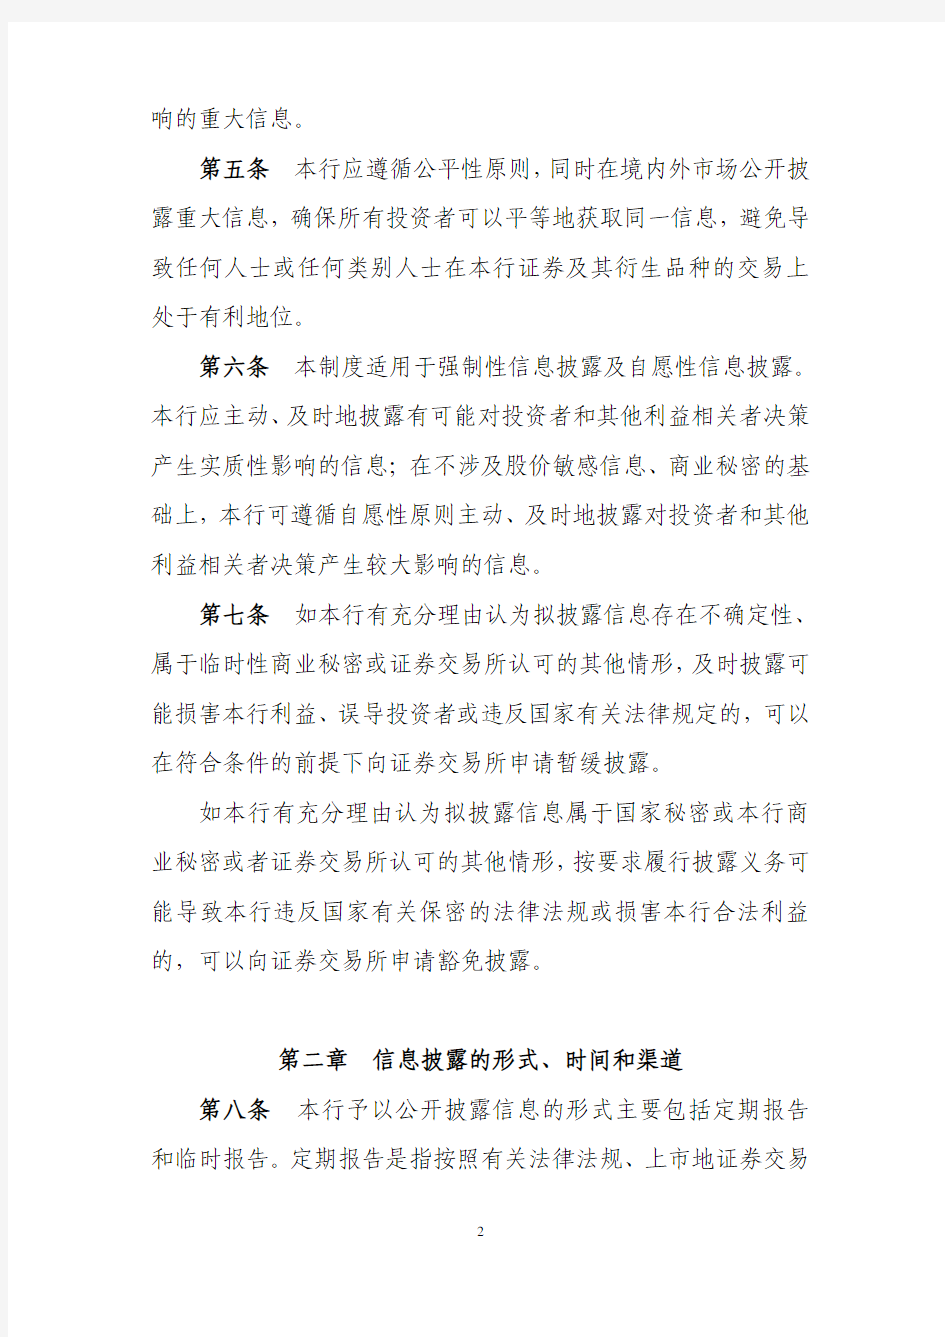 中国农业银行股份有限公司信息披露制度.pdf